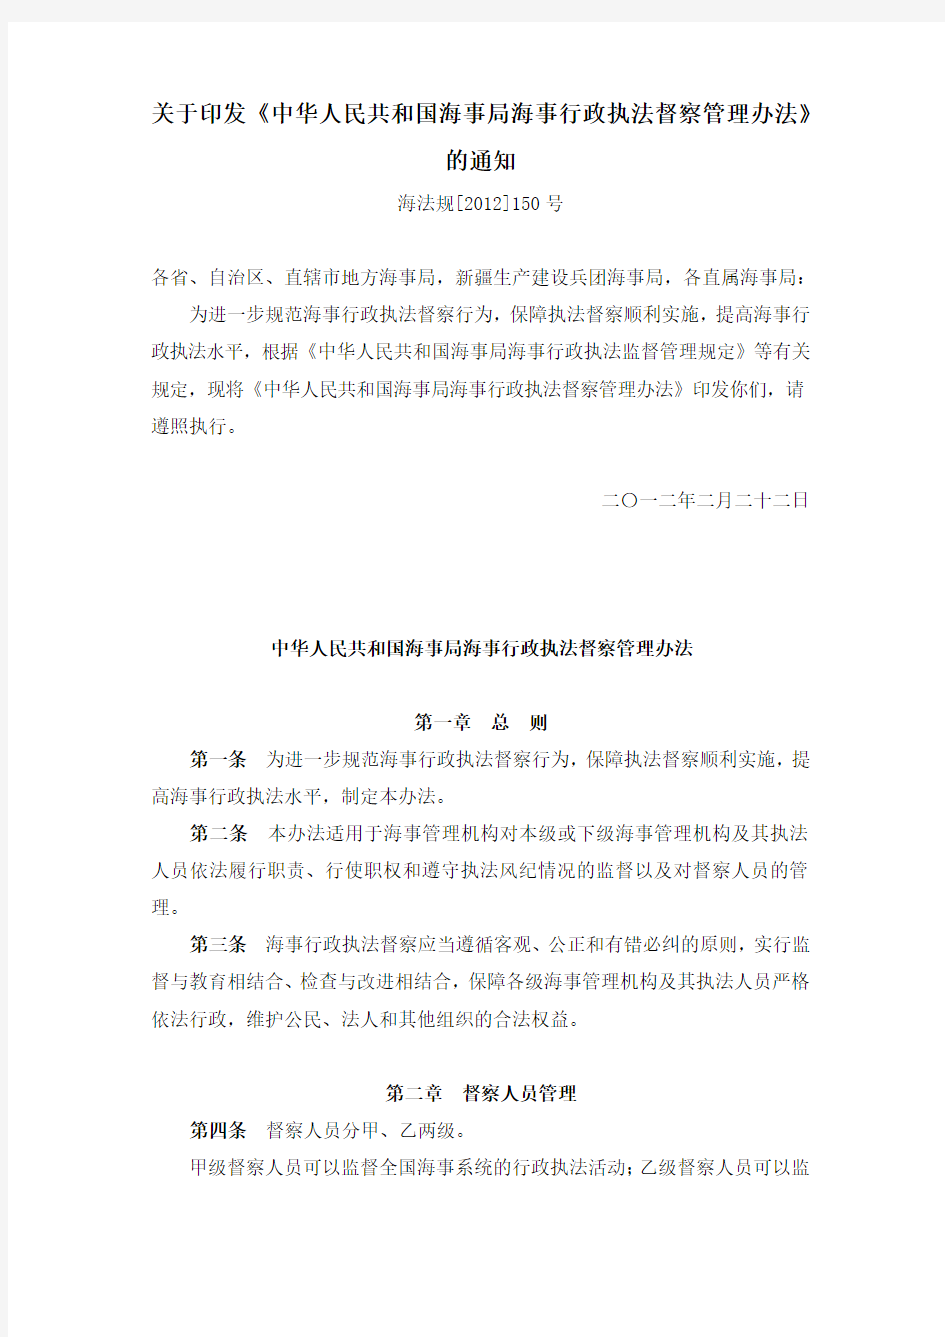 关于印发《中华人民共和国海事局海事行政执法督察管理办法》的通知